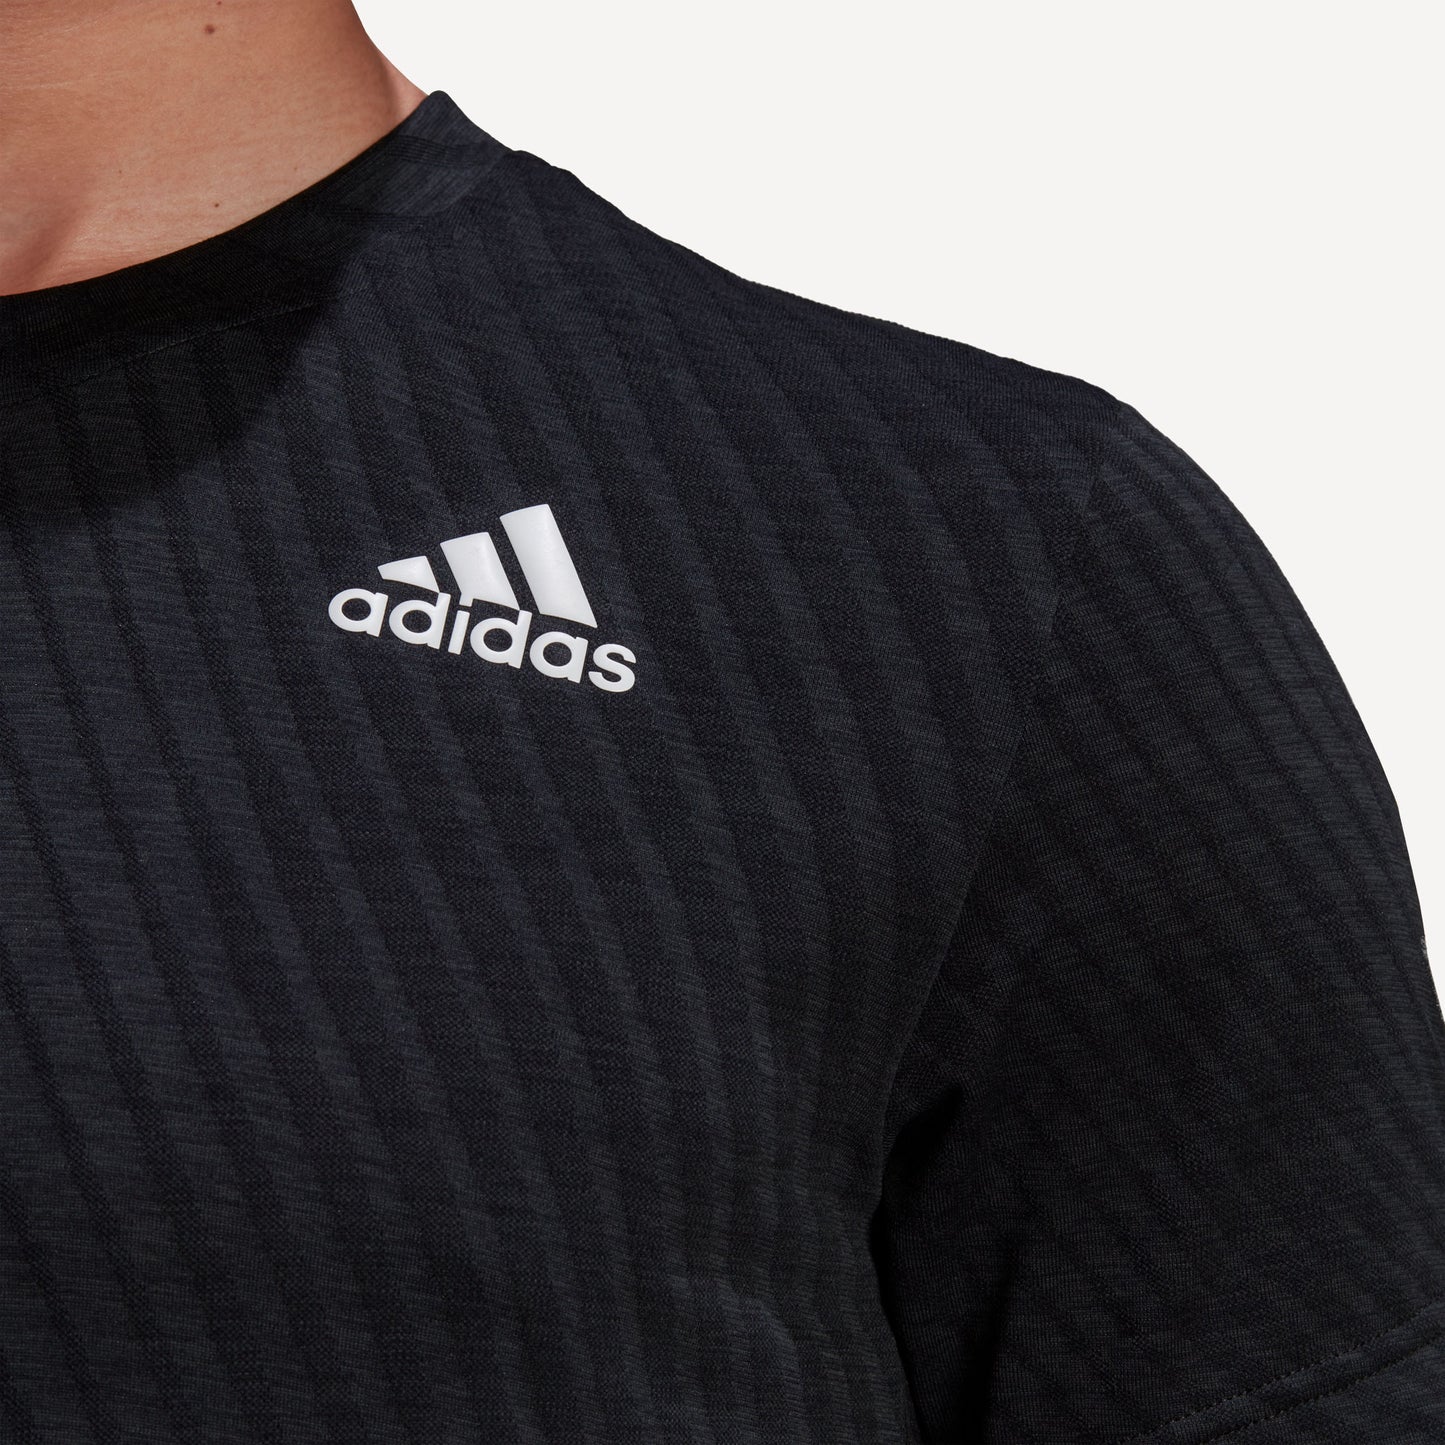 adidas Freelift Men's Tennis Shirt Black (5)